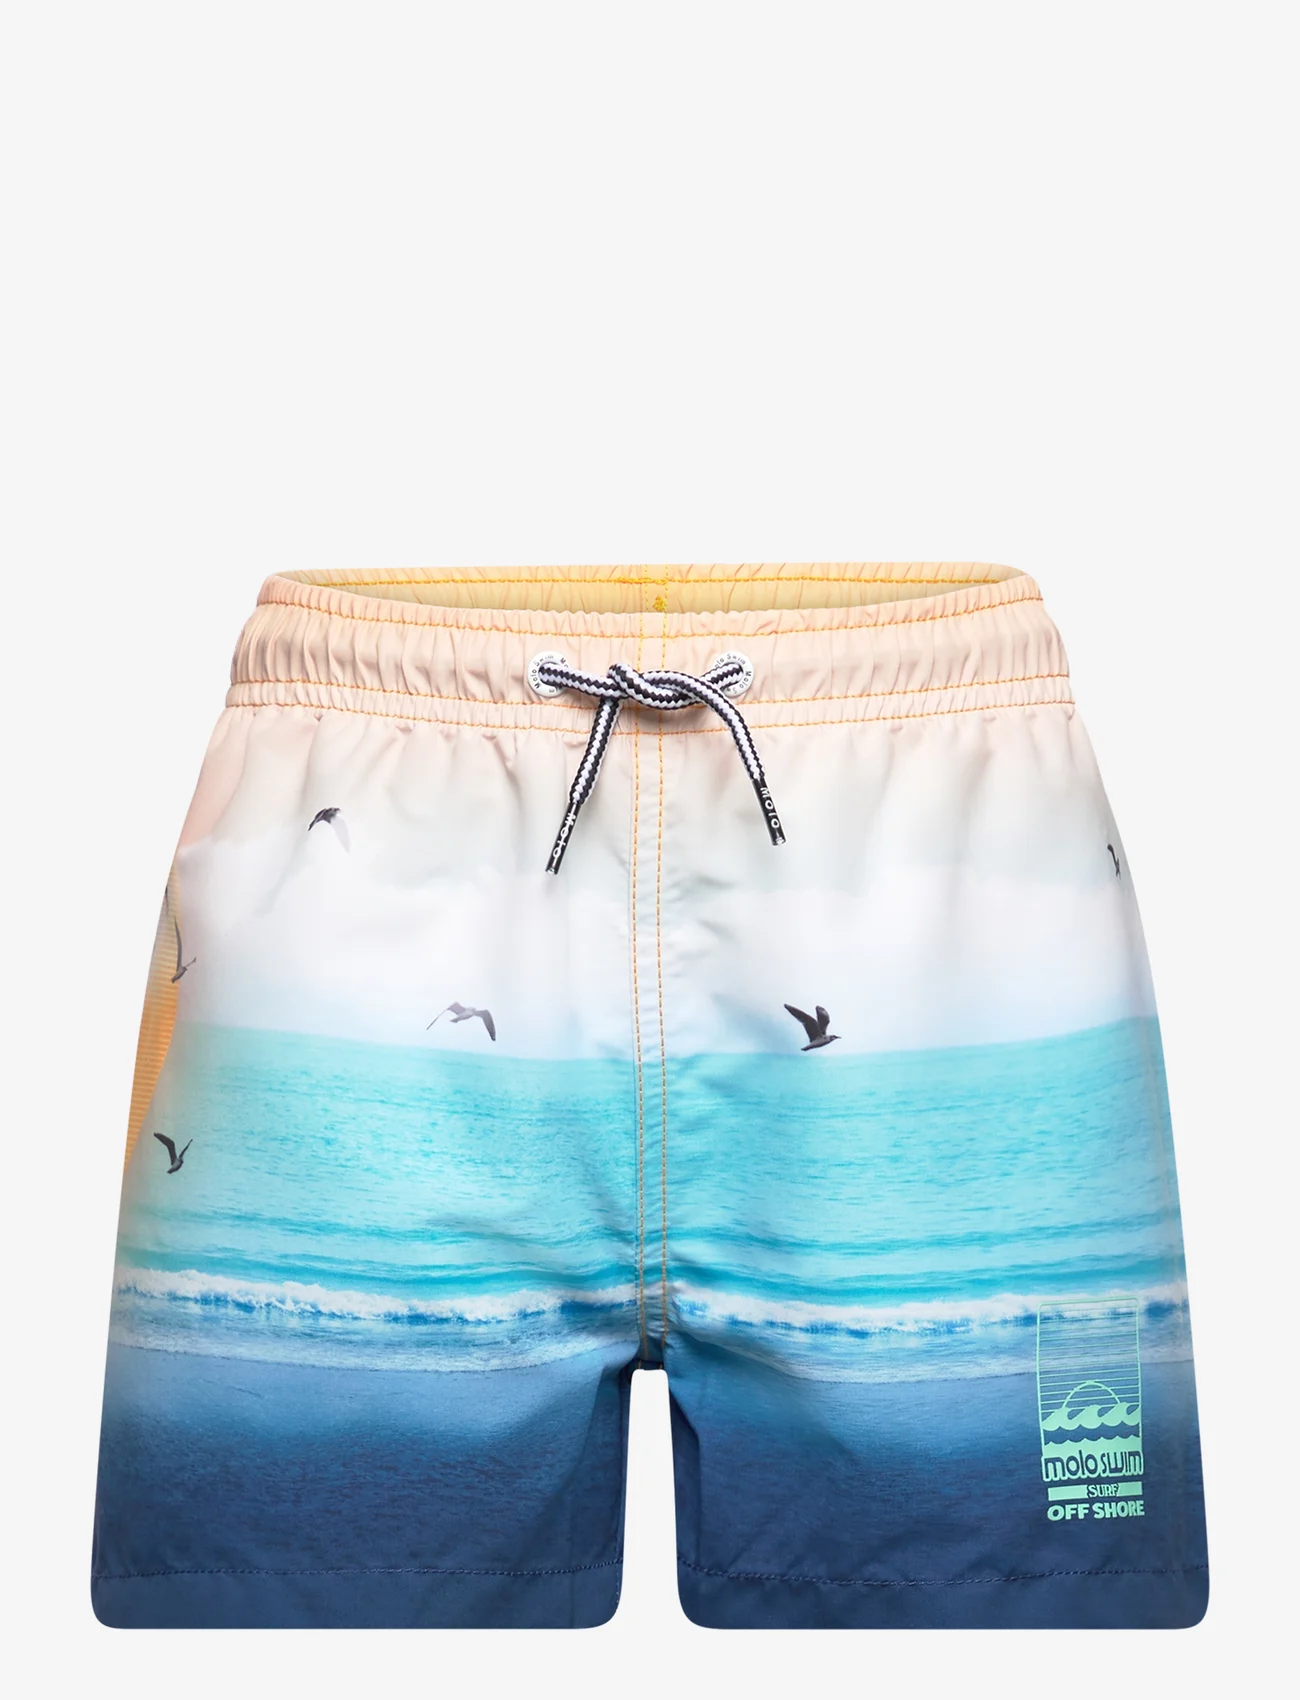 Molo - Niko - shorts de bain - sunset beach - 0